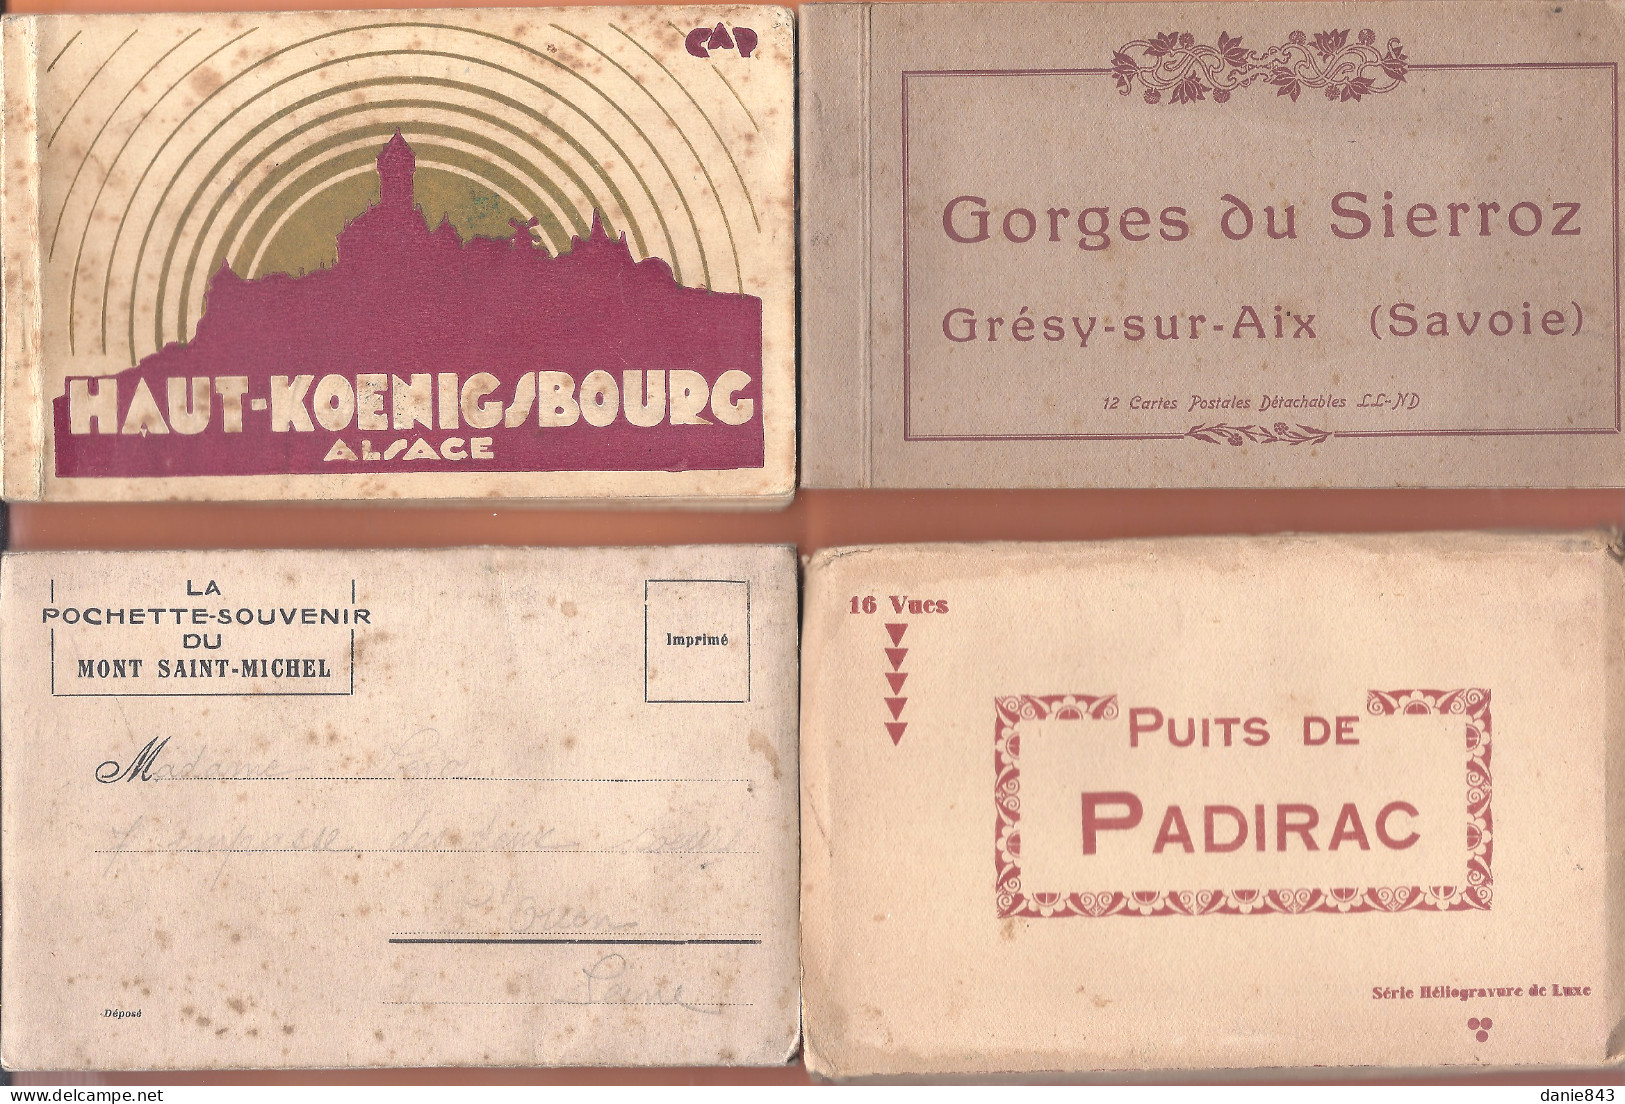 Lot de 80 carnets CPA et CPSM + 2 doc divers, Villes & sites de France + de 1000 cartes - Tous les carnets sont visibles